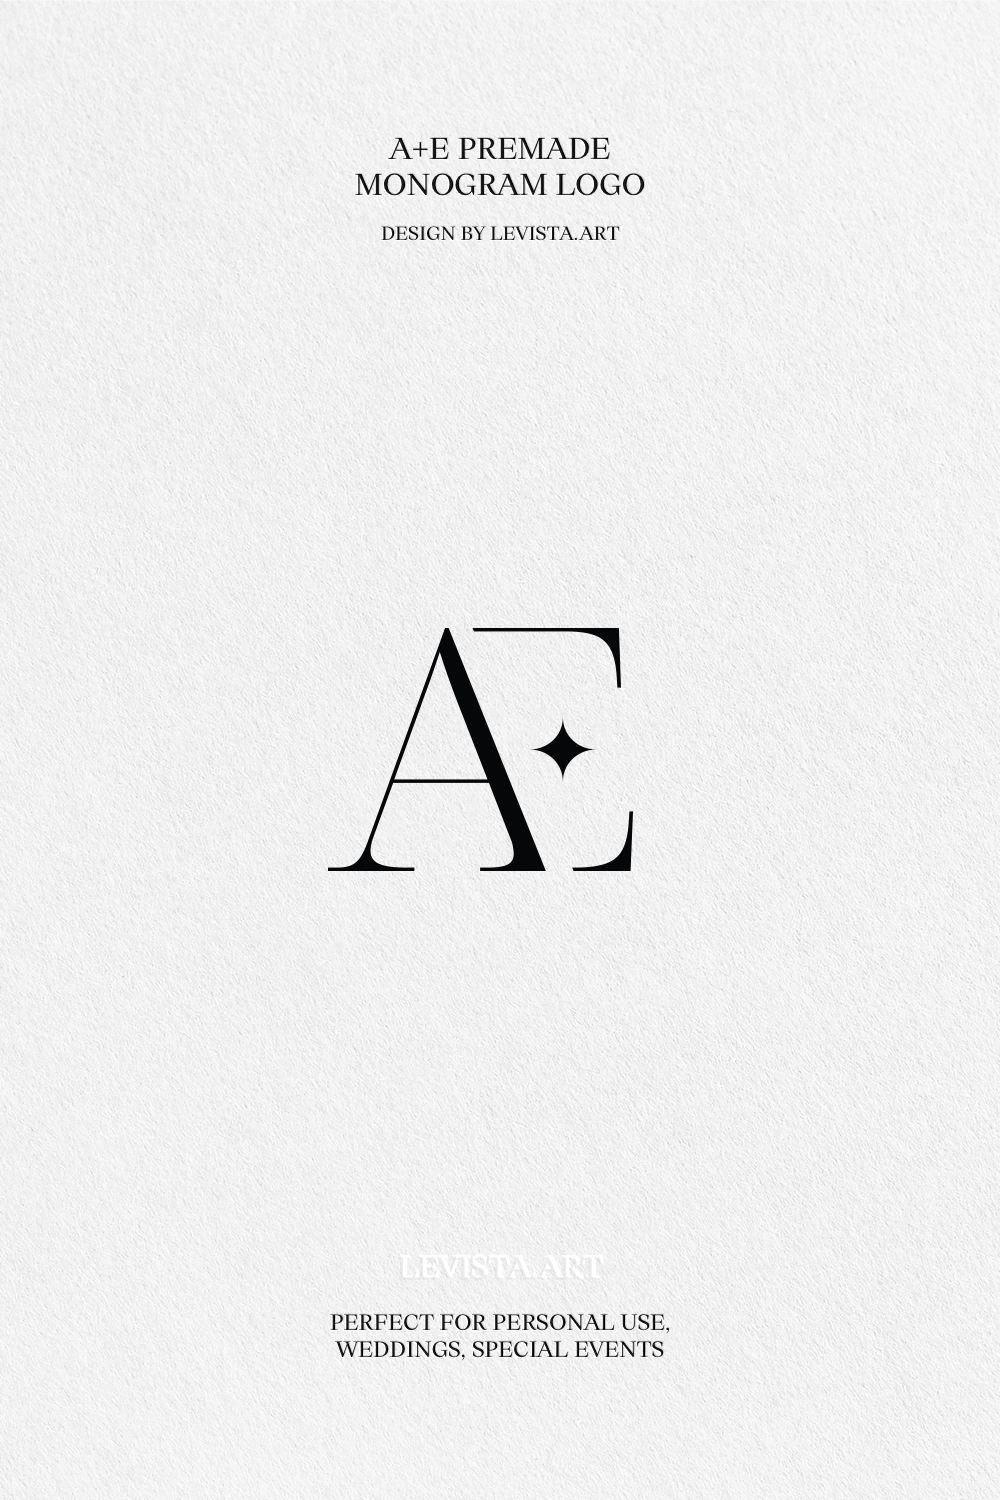 AE premade monogram logo design